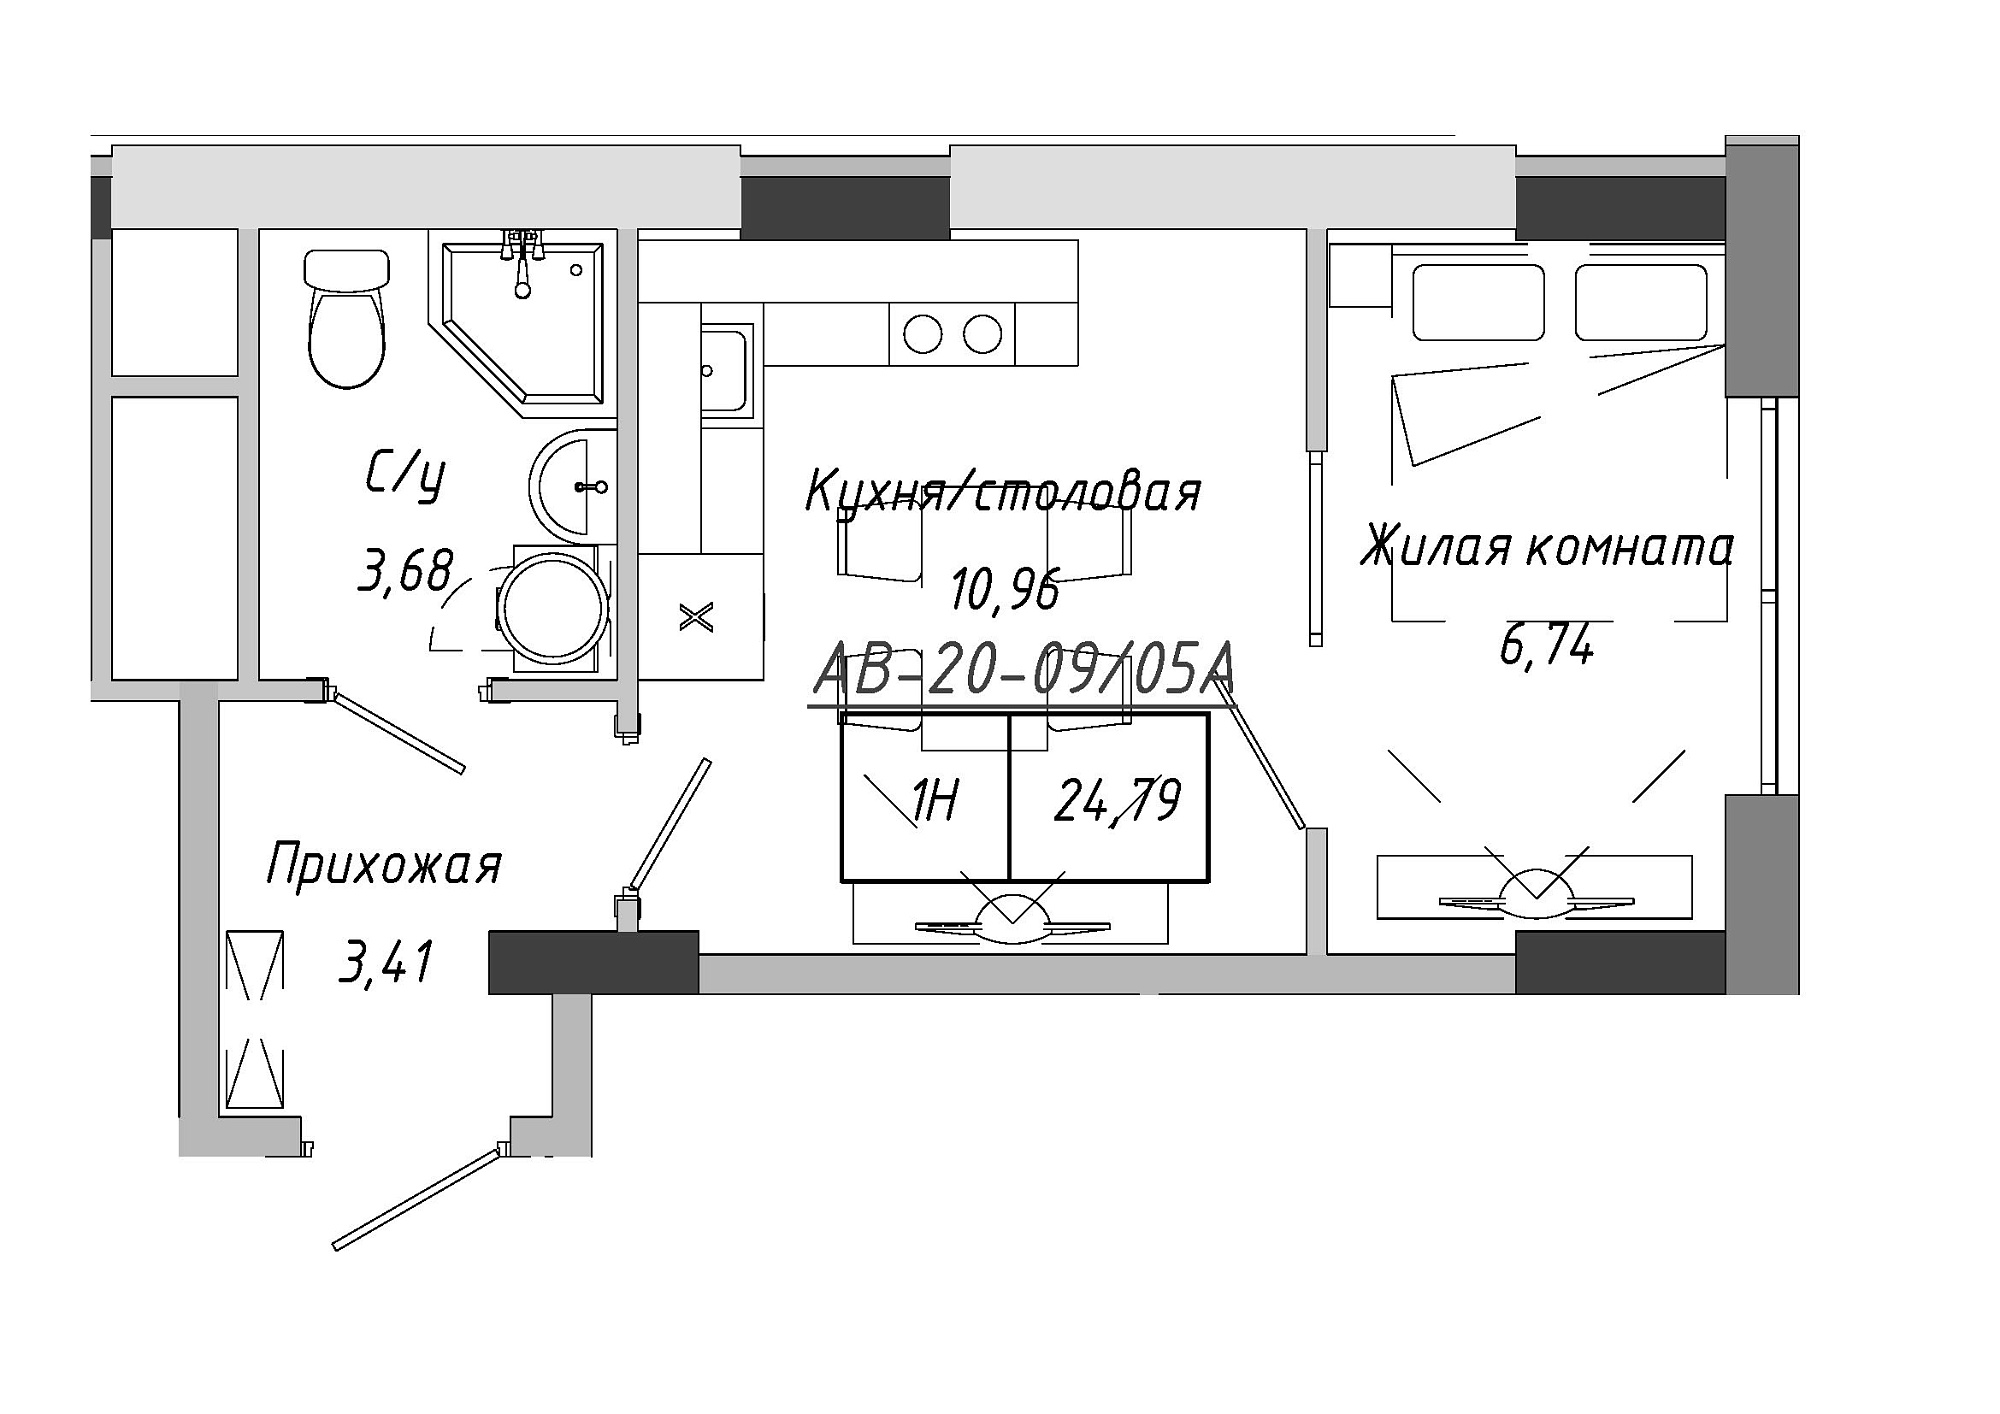 Планировка 1-к квартира площей 24.41м2, AB-20-09/0005а.